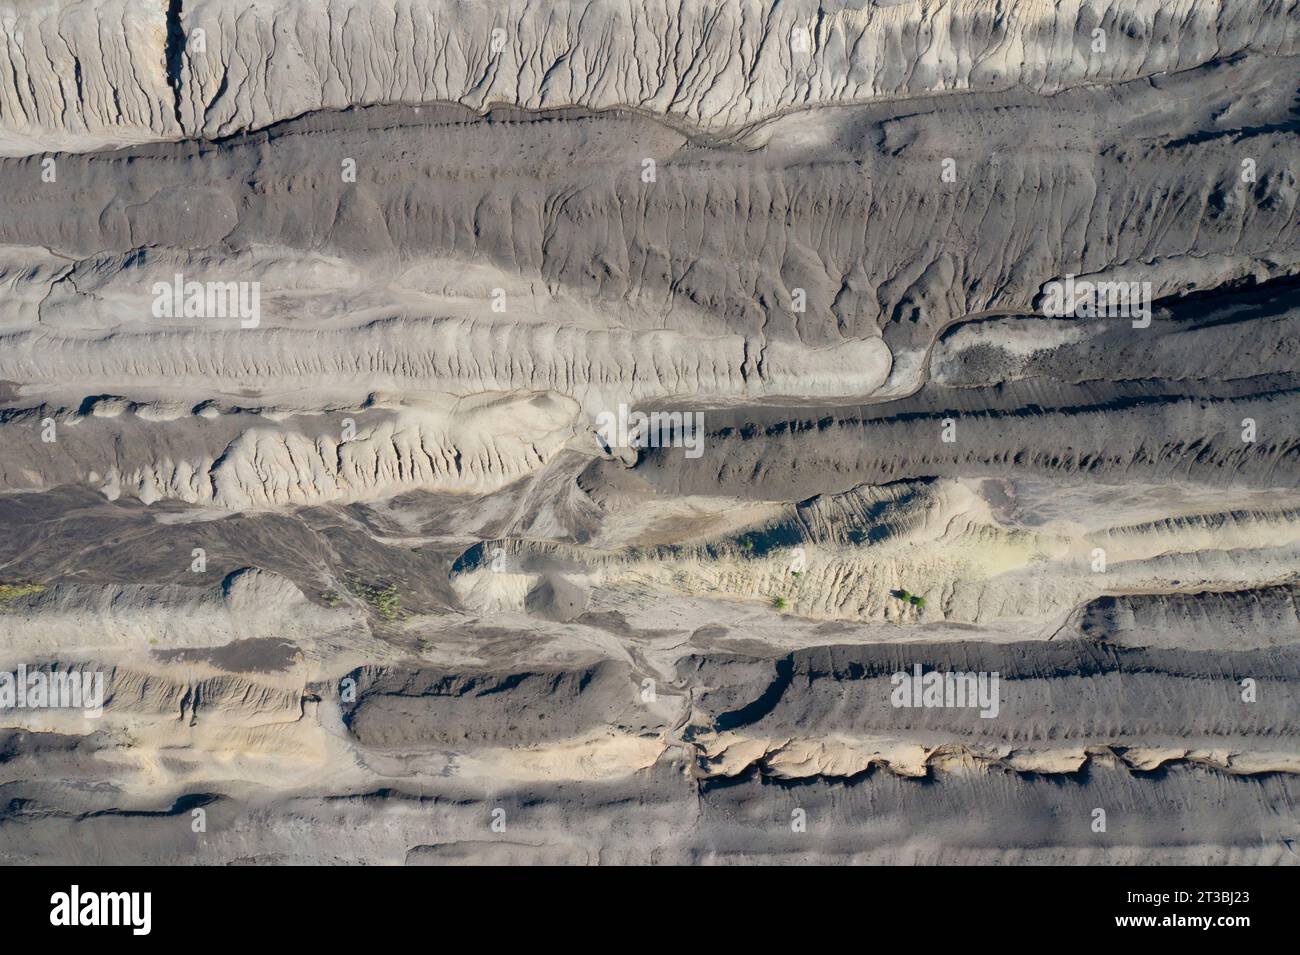 Vue aérienne au-dessus du paysage exploité et dévasté de la fosse à ciel ouvert Nochten, mine de lignite près de Weißwasser / Weisswasser, Saxe, Allemagne de l'est Banque D'Images